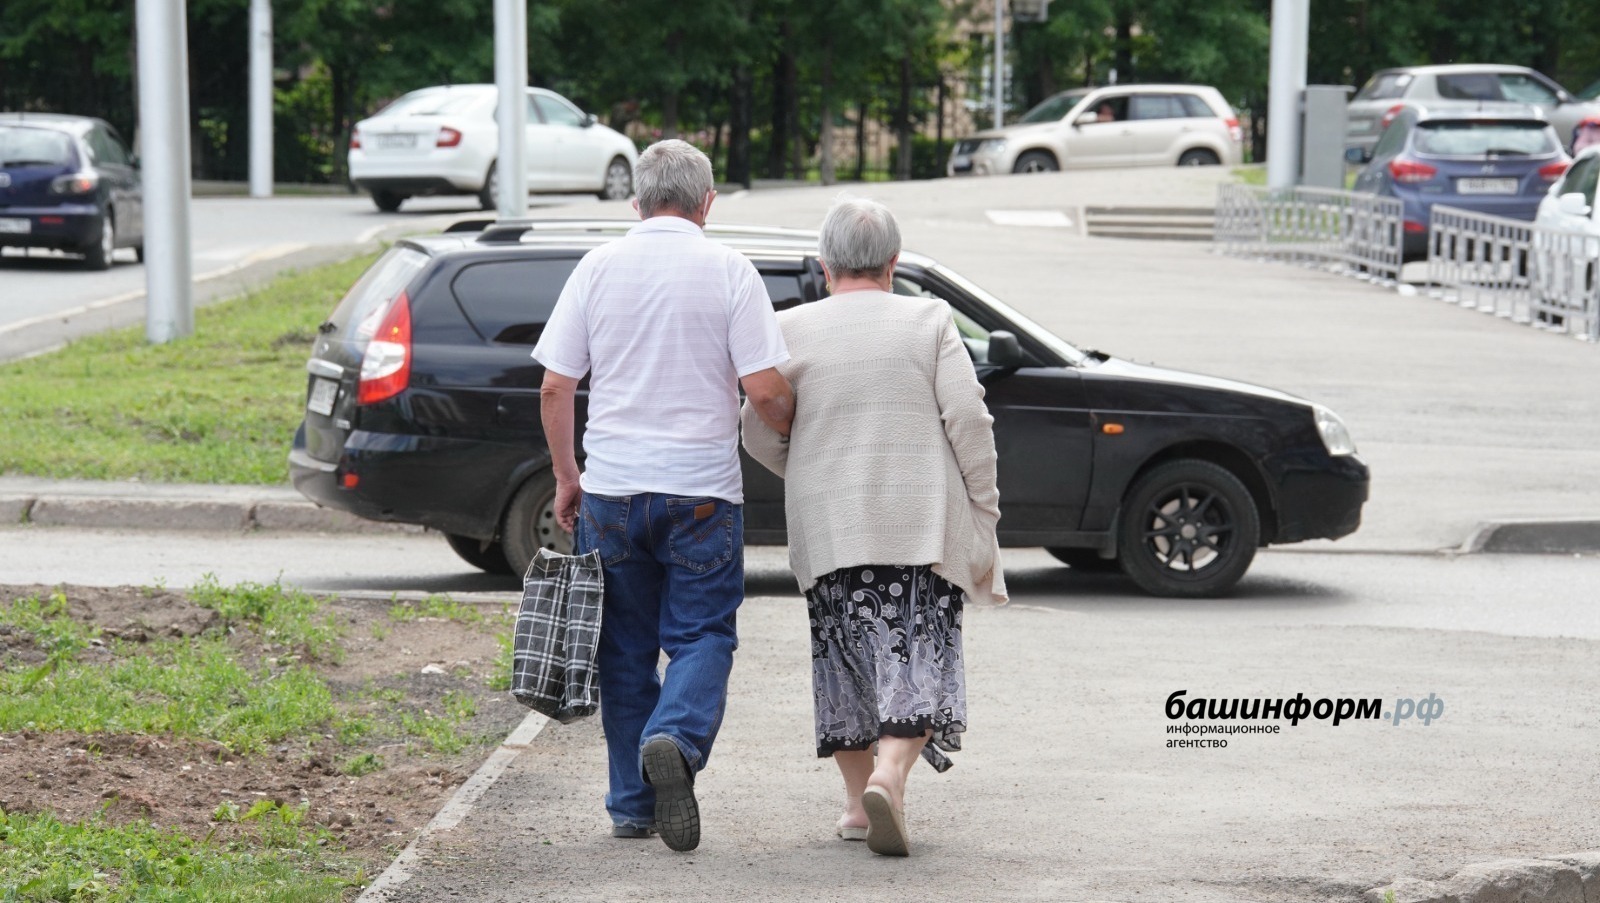 Башкирия станет площадкой для новой системы долговременного ухода за пожилыми и инвалидами